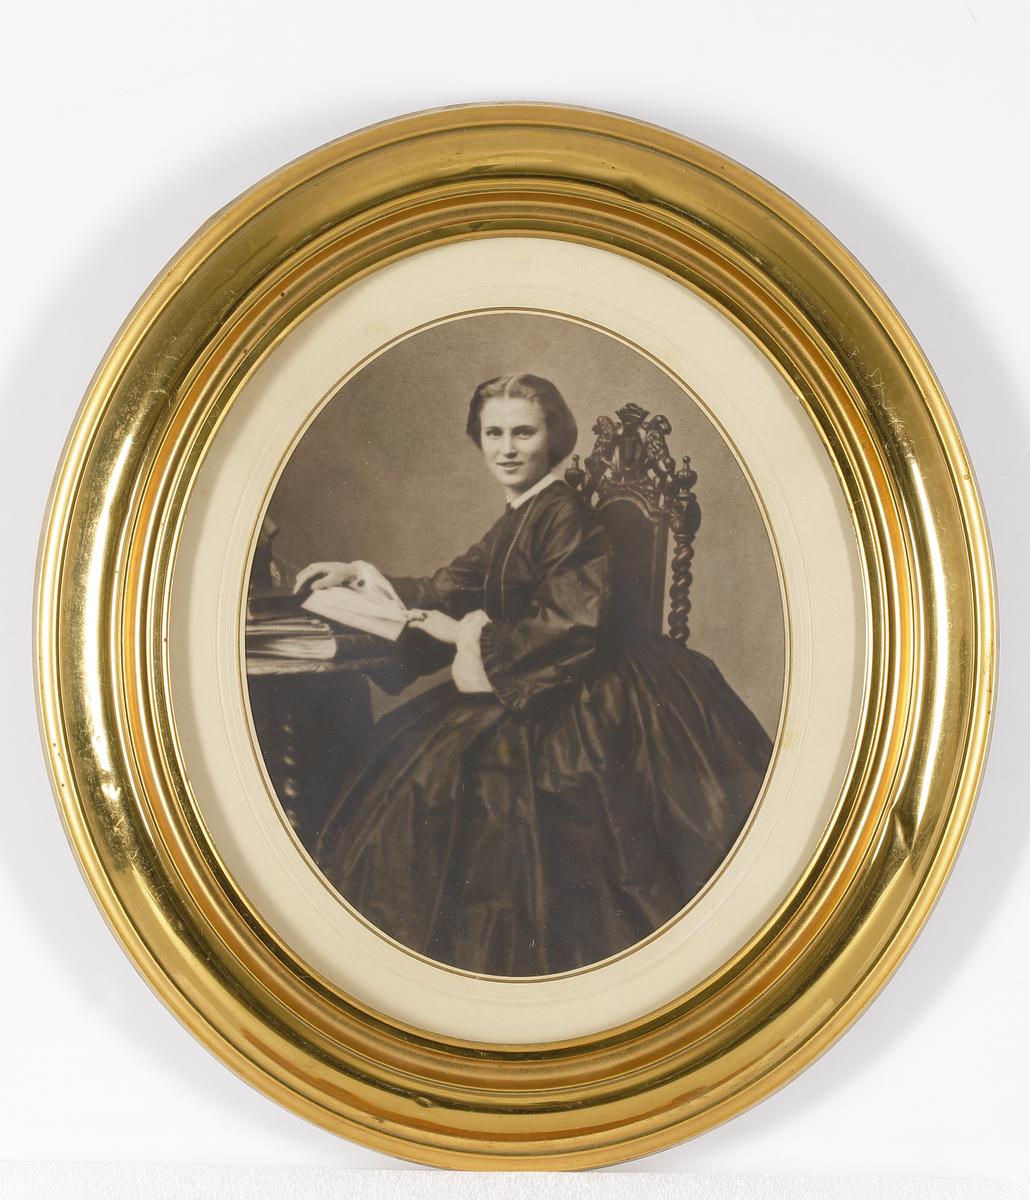 Fotografi, 1860-talet, av Christina Nilsson. Helfigur, sittande. Monterad i oval guldram.

Inskrivet i huvudkatalog 1935.